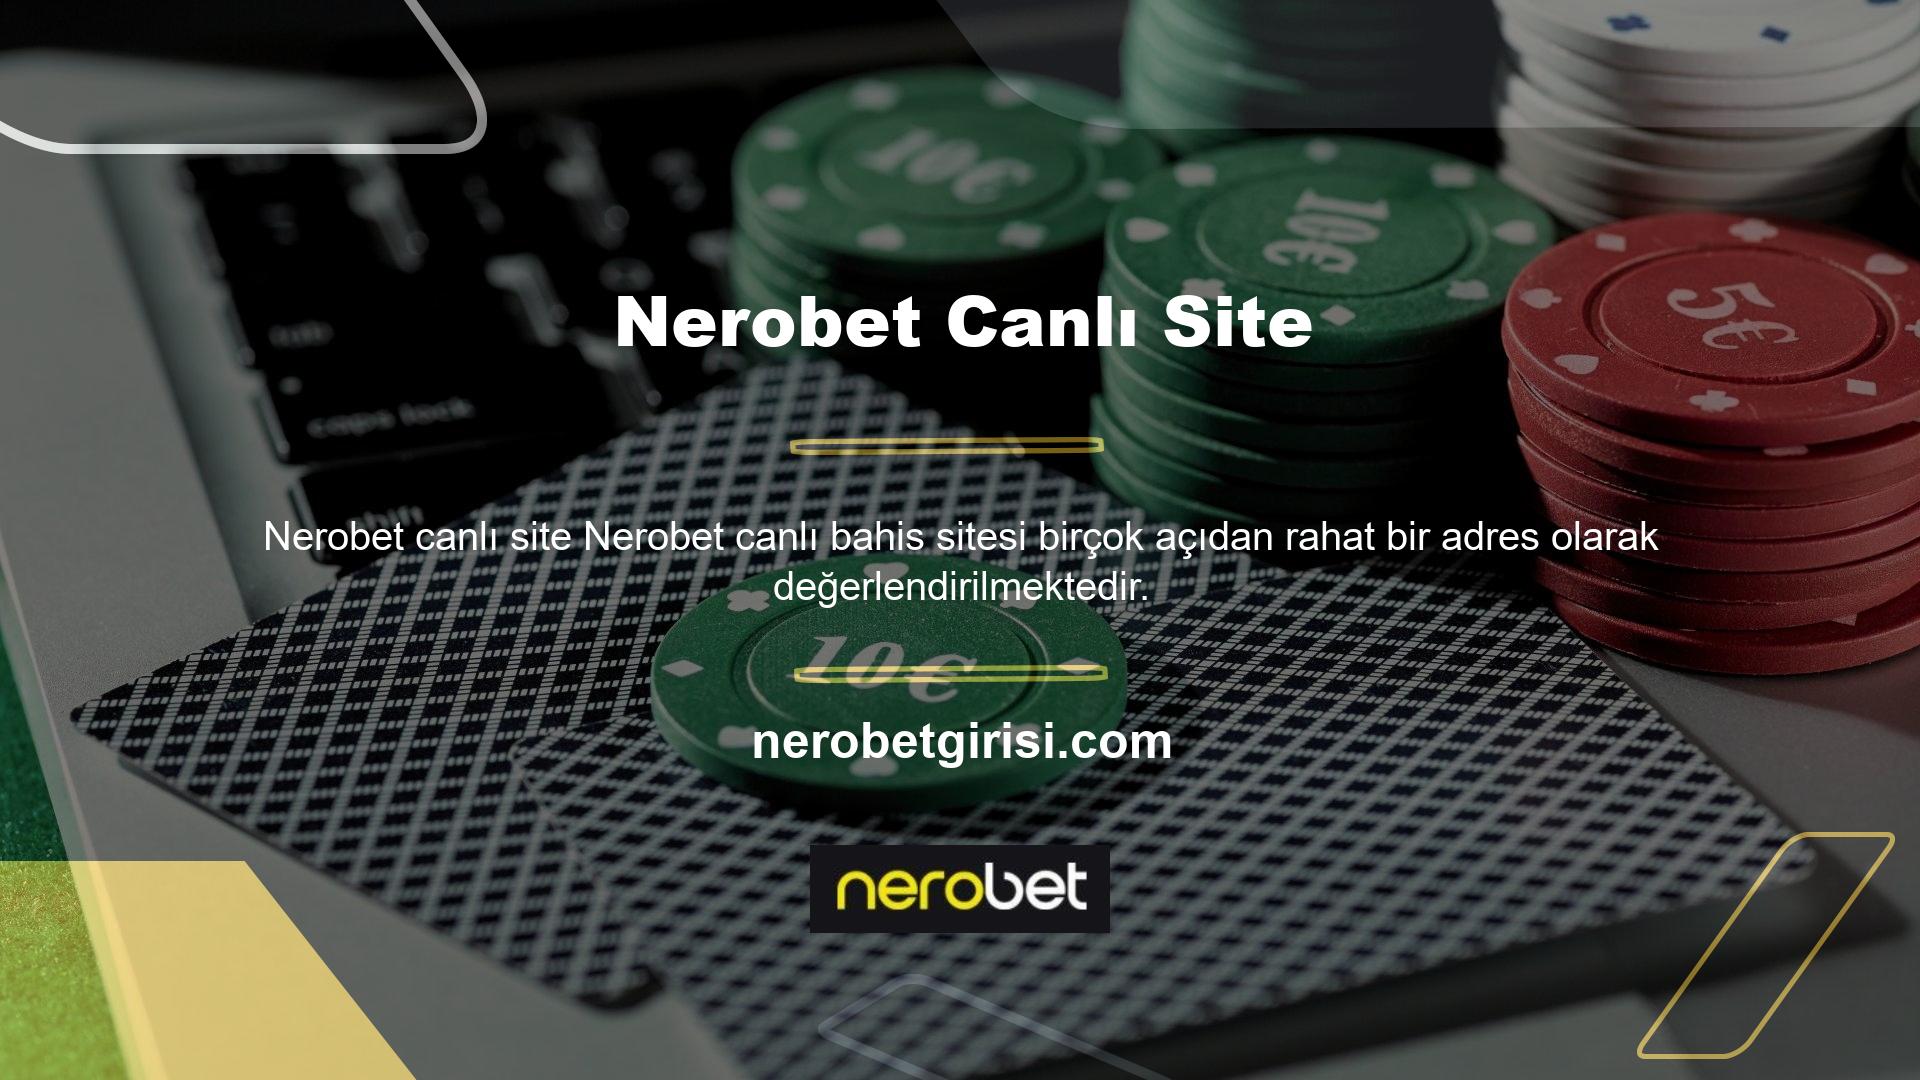 Onun hakkındaki yorumlar platform pozisyonlarını belirlemeye devam ederken, Nerobet forumu ve diğer web sitelerindeki yorumlarına verilen tepkiler büyük farklılıklar gösteriyor